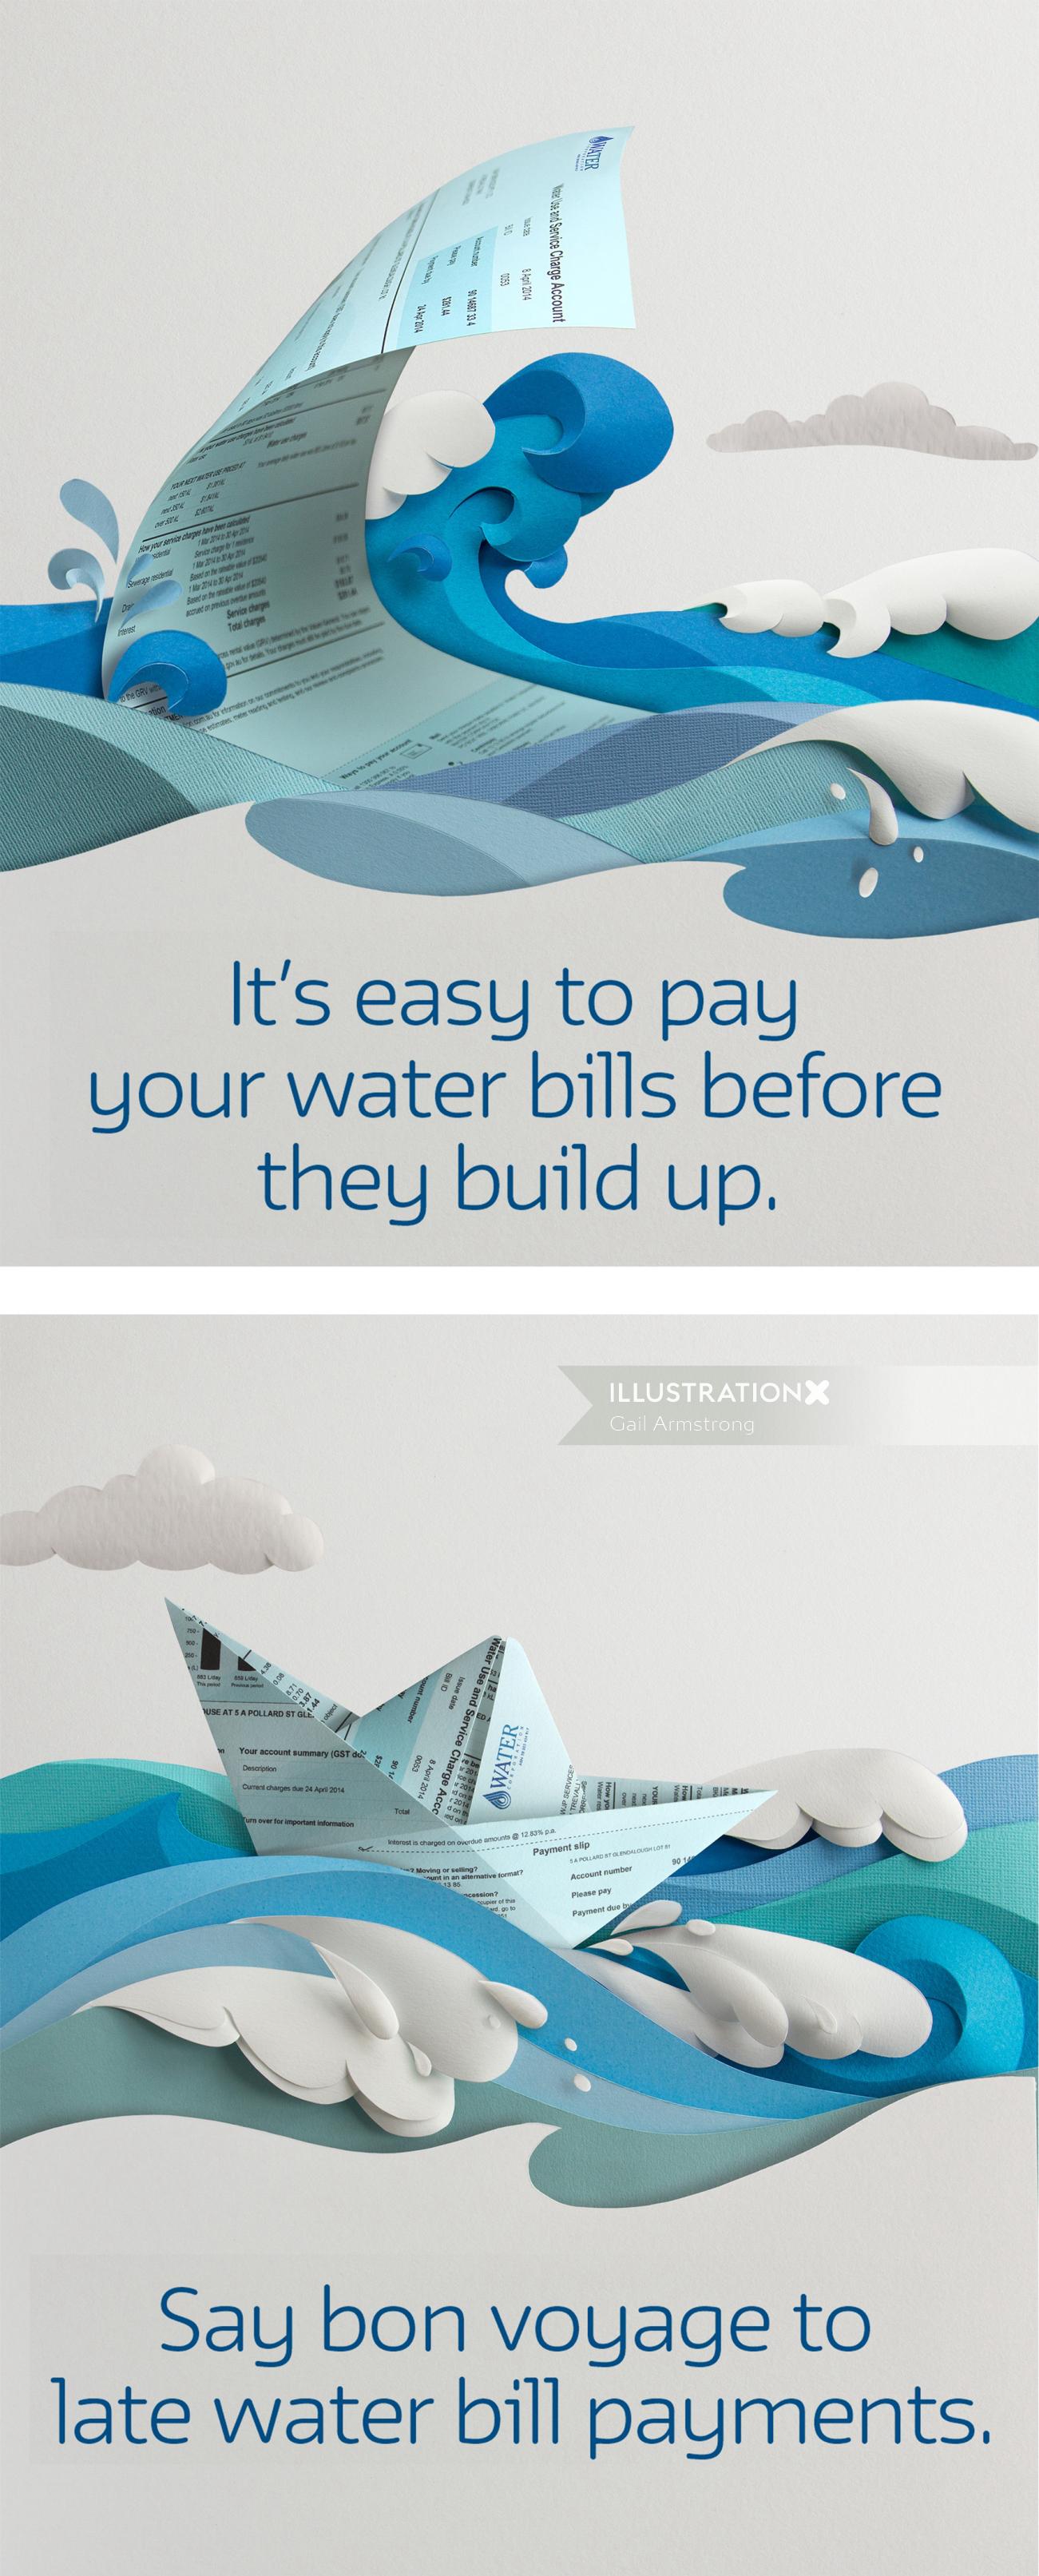 Water Corporation Australiaの広告イラスト